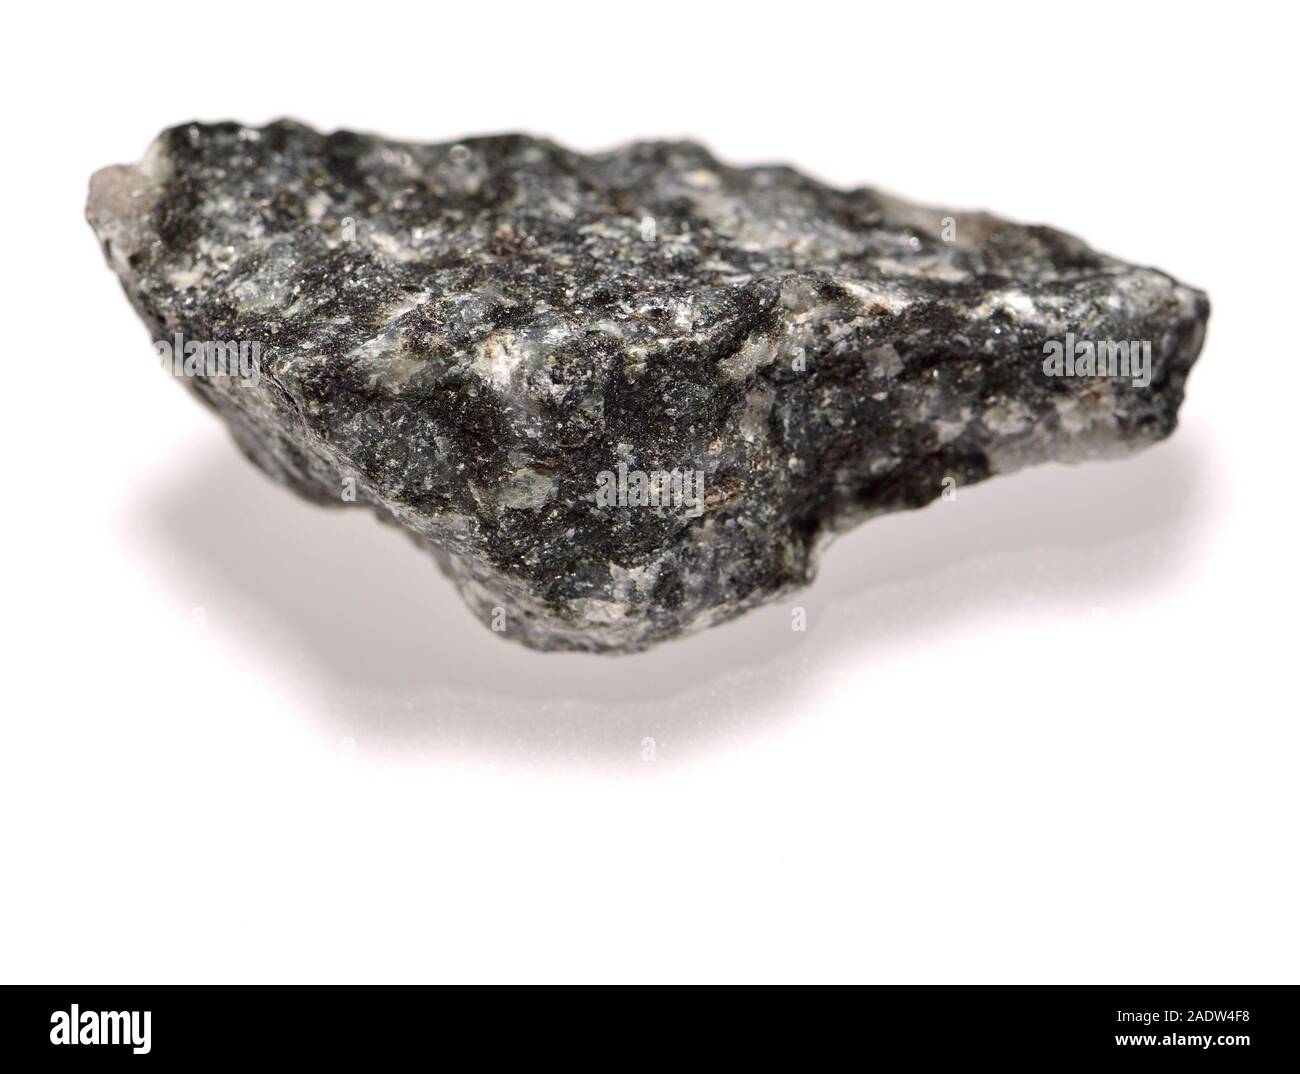 - Gabbro, gros grains de roche ignée intrusive formée à partir du refroidissement lent et riches en magnésium de magma riche en fer Banque D'Images